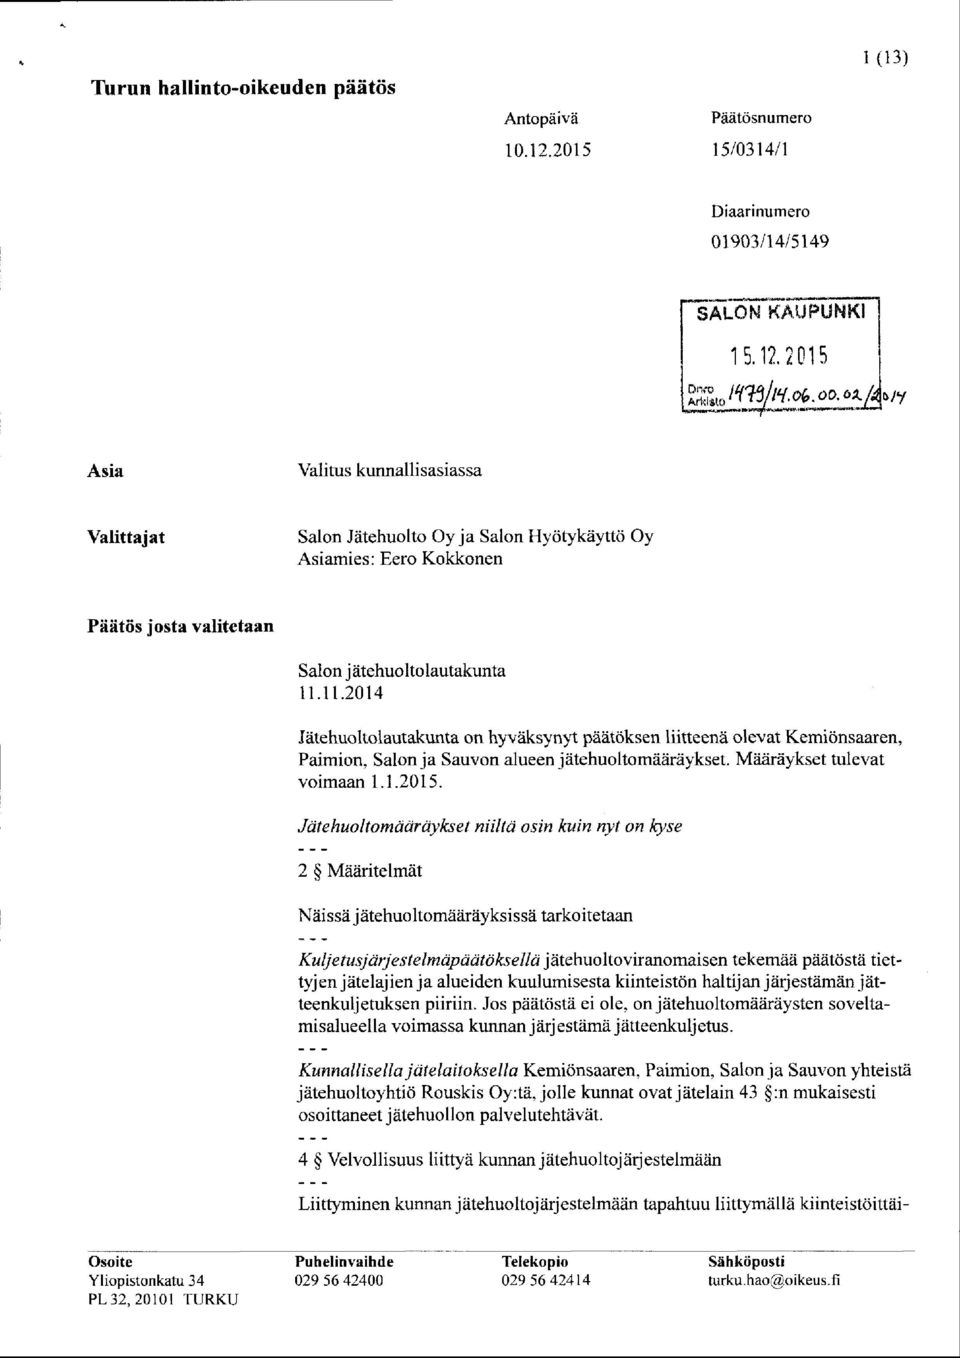 11.2014 Jätehuoltolautakunta on h yv ä k sy ny t päätöksen liitteenä olevat Kemiönsaaren, Paimion, Salon ja Sauvon alueen jätehuolto määräykset. Määräykset tulevat voimaan 1.1 2 0 1 5.